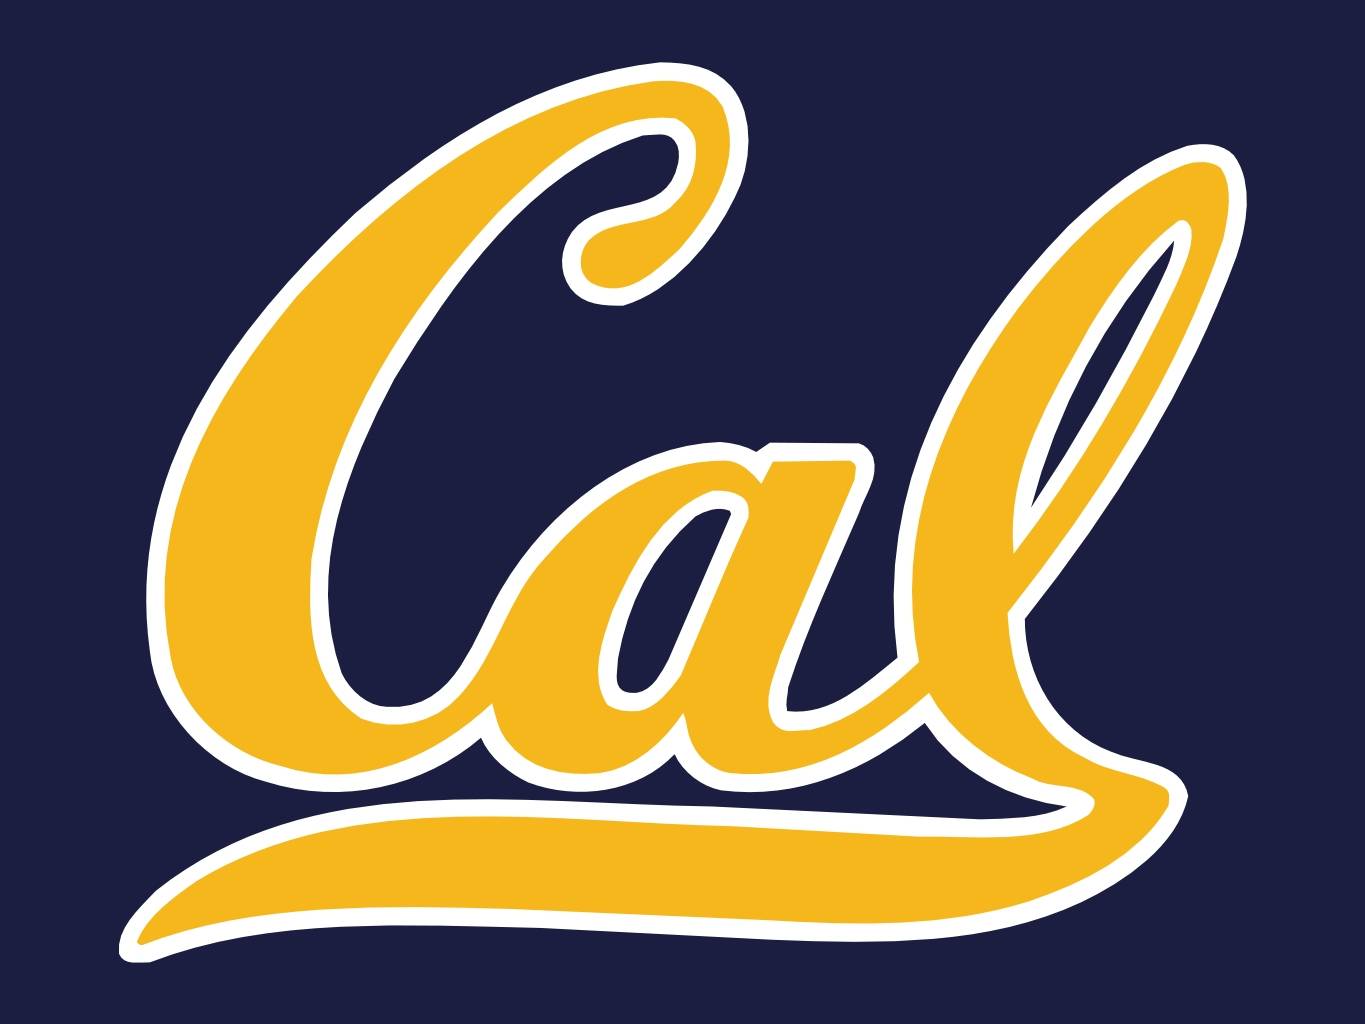 California Golden Bears 2016 NCAA Football Preview